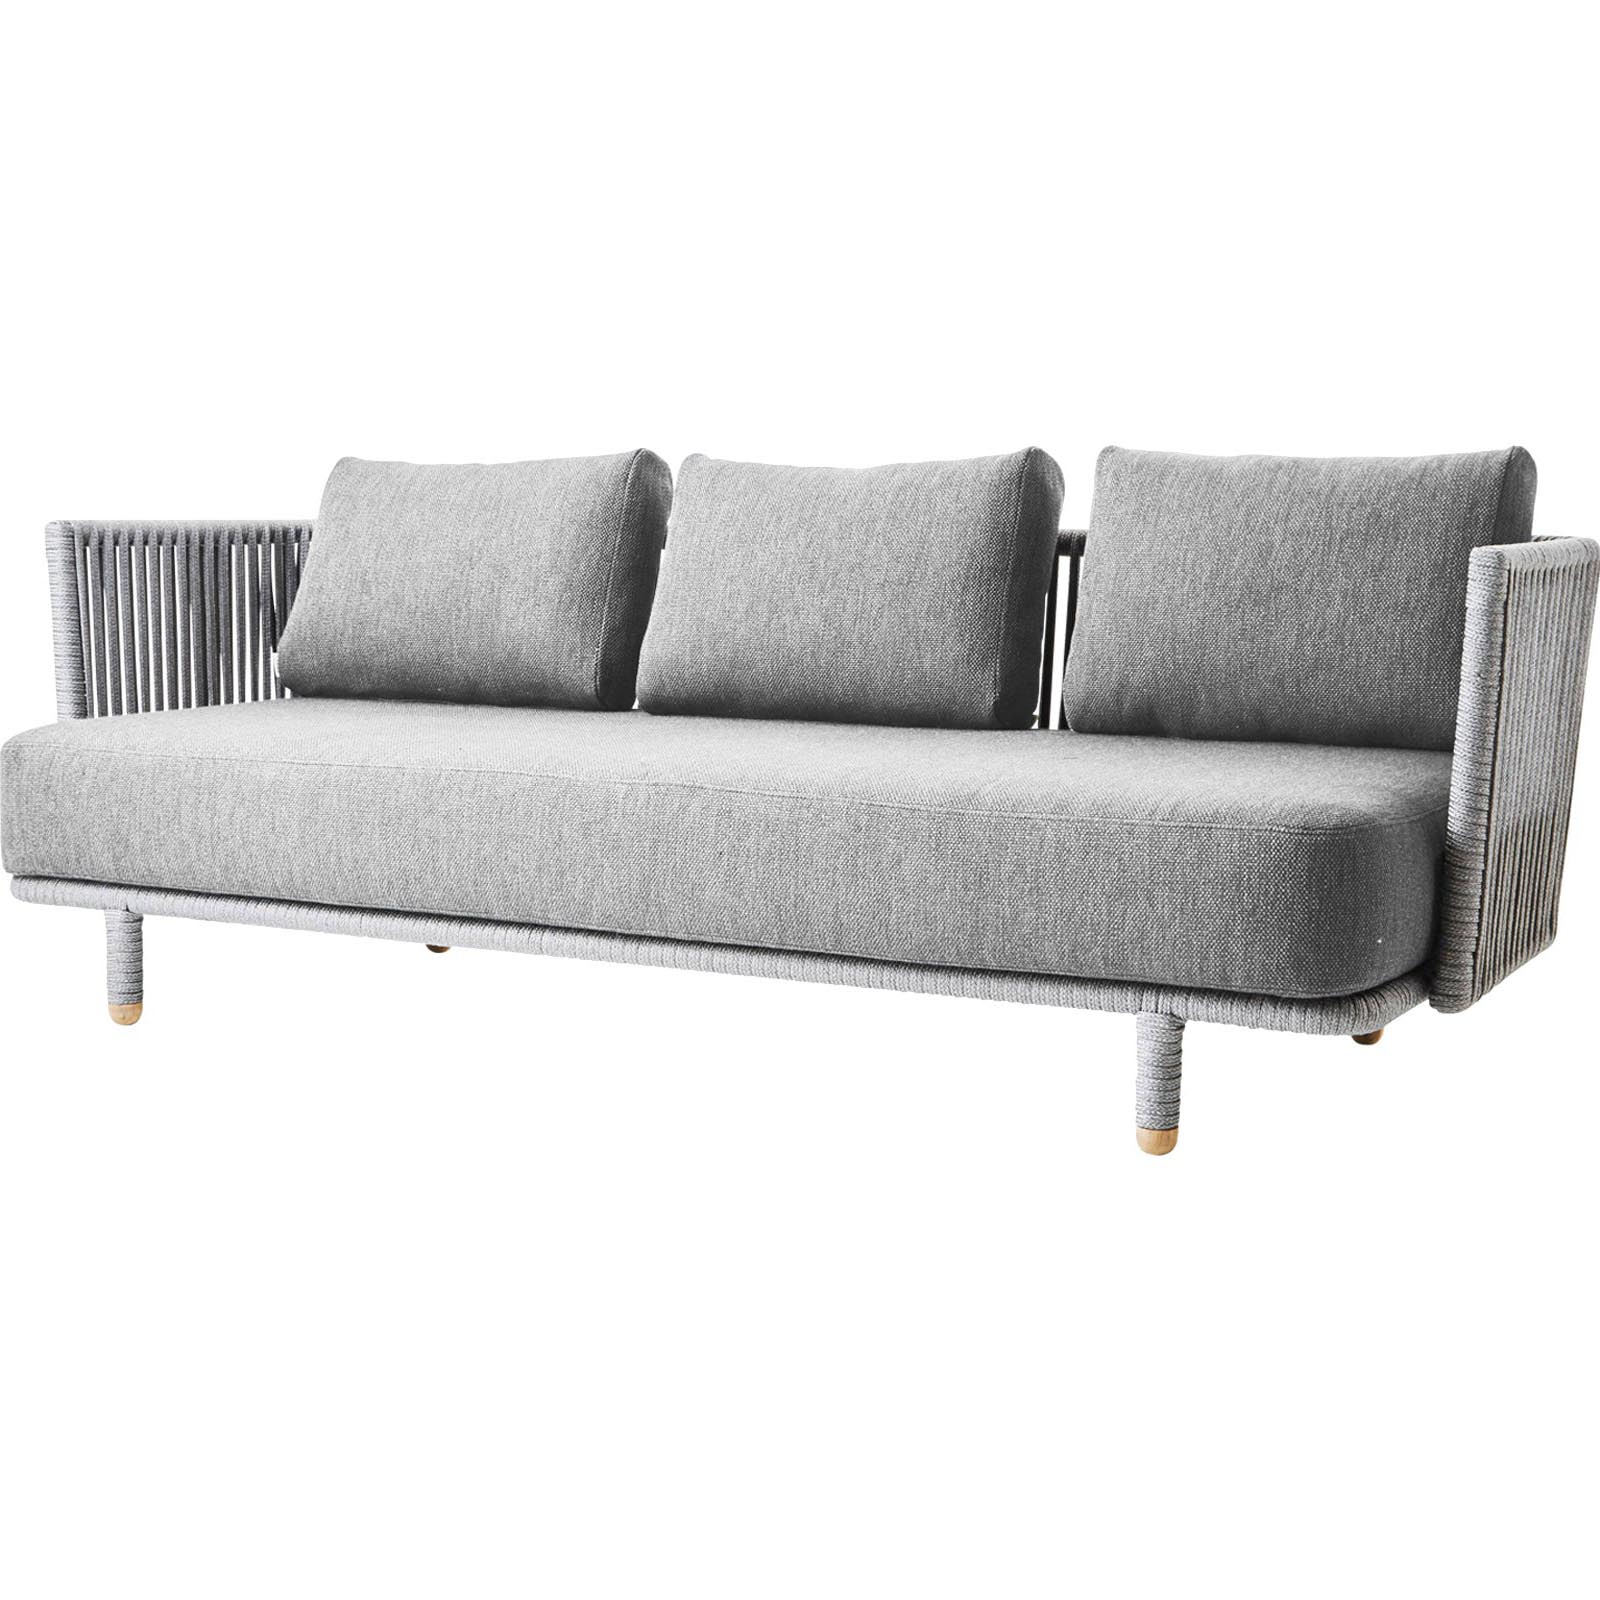 Moments 3-Sitzer Sofa aus Cane-line Soft Rope in Grey mit Kissen aus Swipe in Light Grey